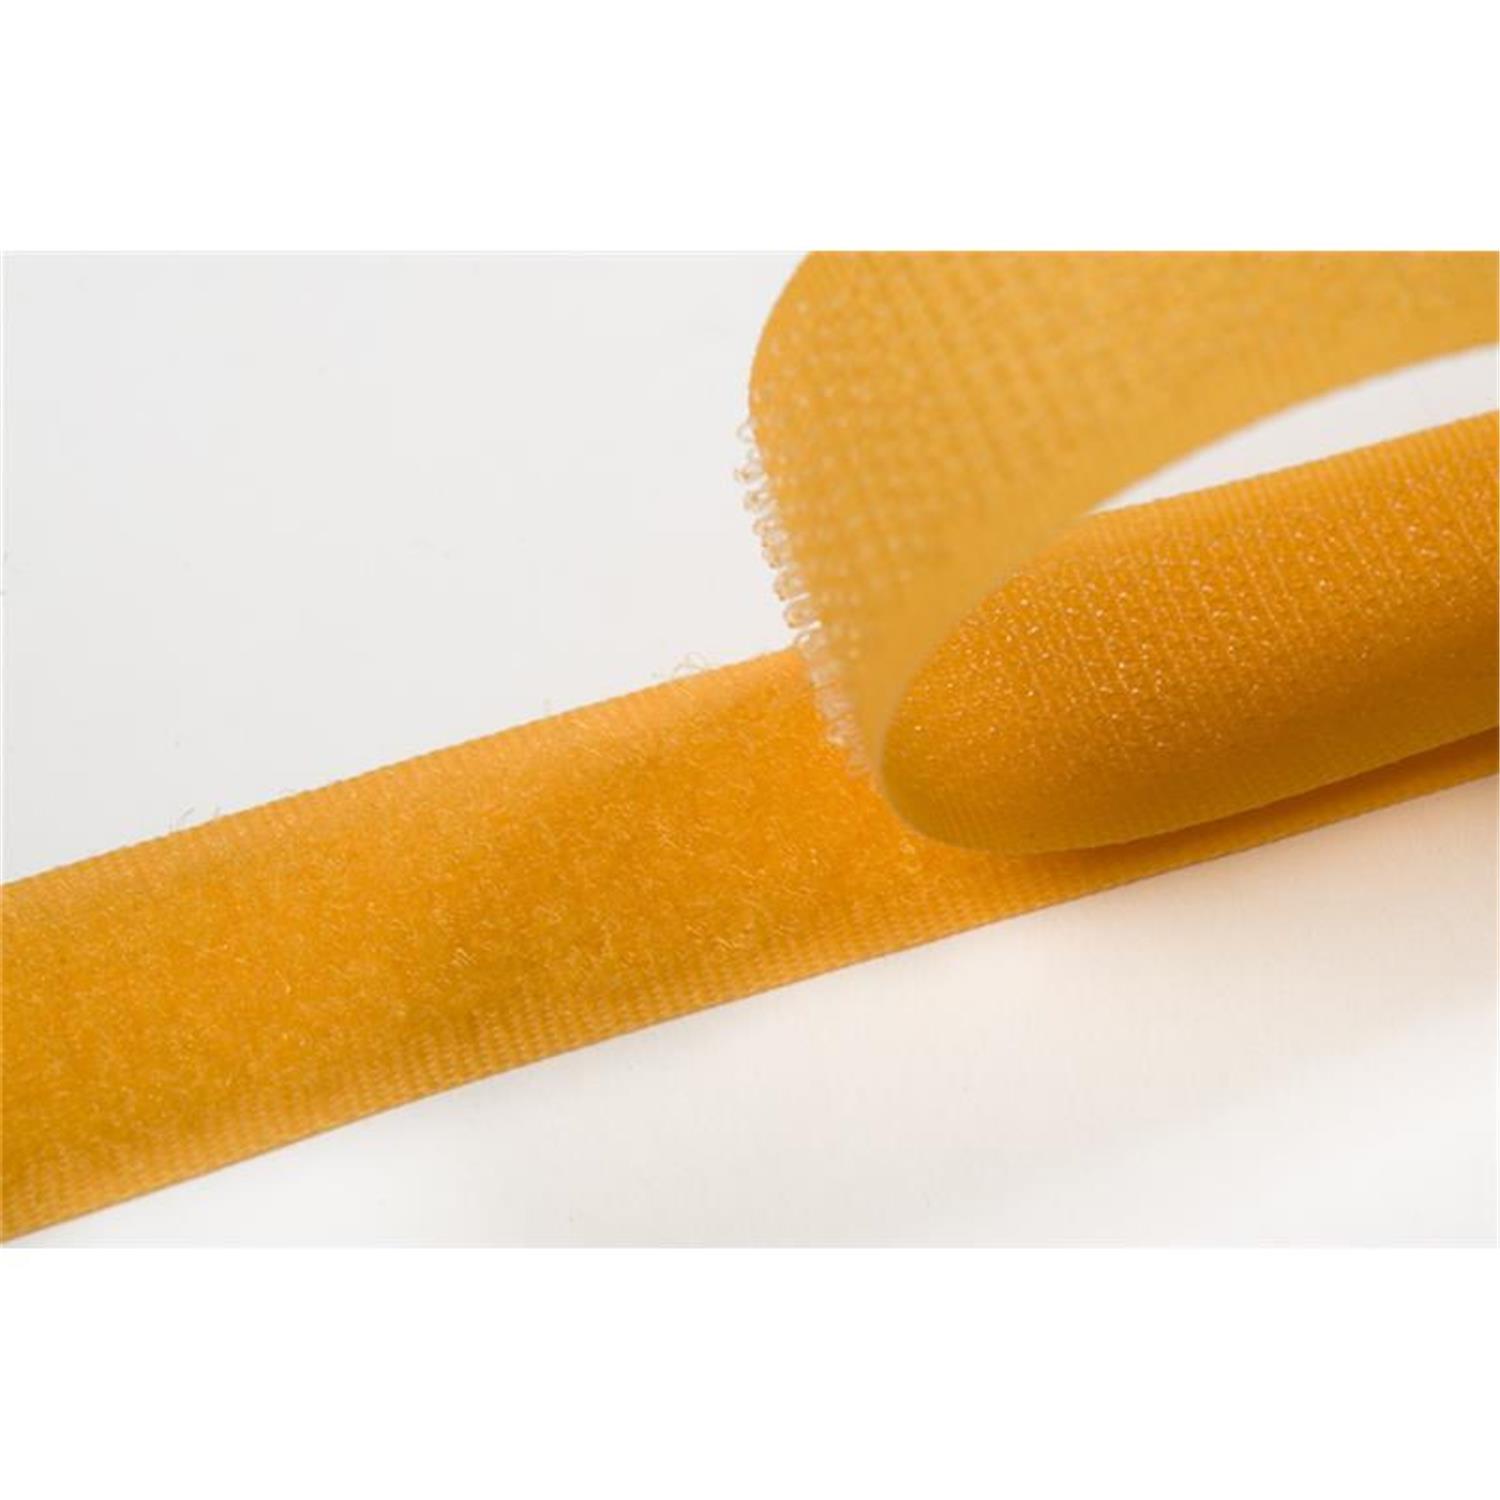 Klettband zum aufnähen, 100 mm, gelb #05 25 Meter